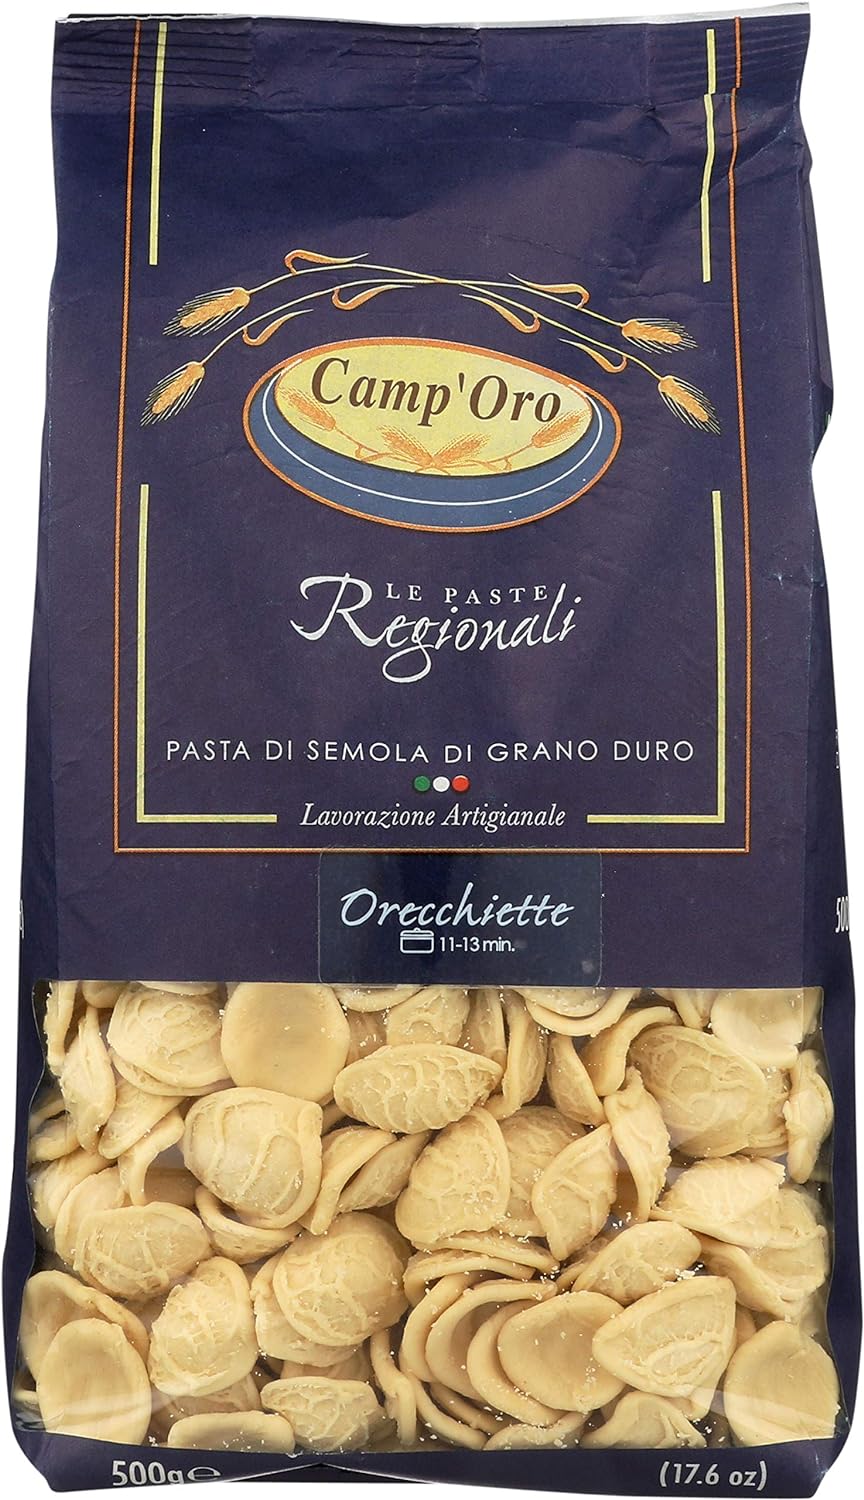 Camp'Oro Le Regionali Italian Pasta, Orecchiette, 17.6 Ounce (Pack of 16)